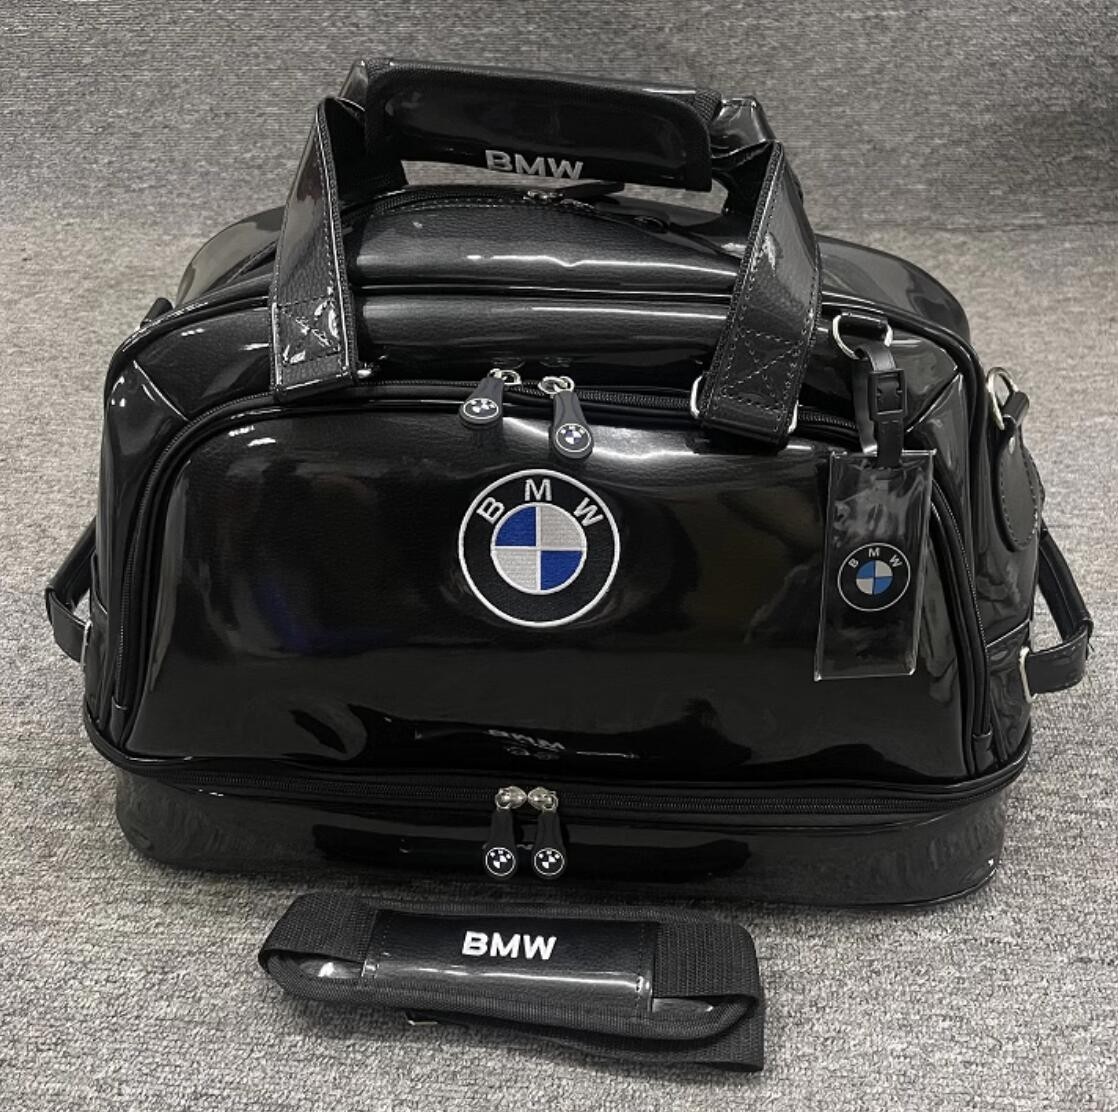 新品 BMW ロゴ ゴルフ衣類収納バッグ 靴バッグ フィットネス旅行収納バッグ ハンドバッグショルダーバッグ多機能収納